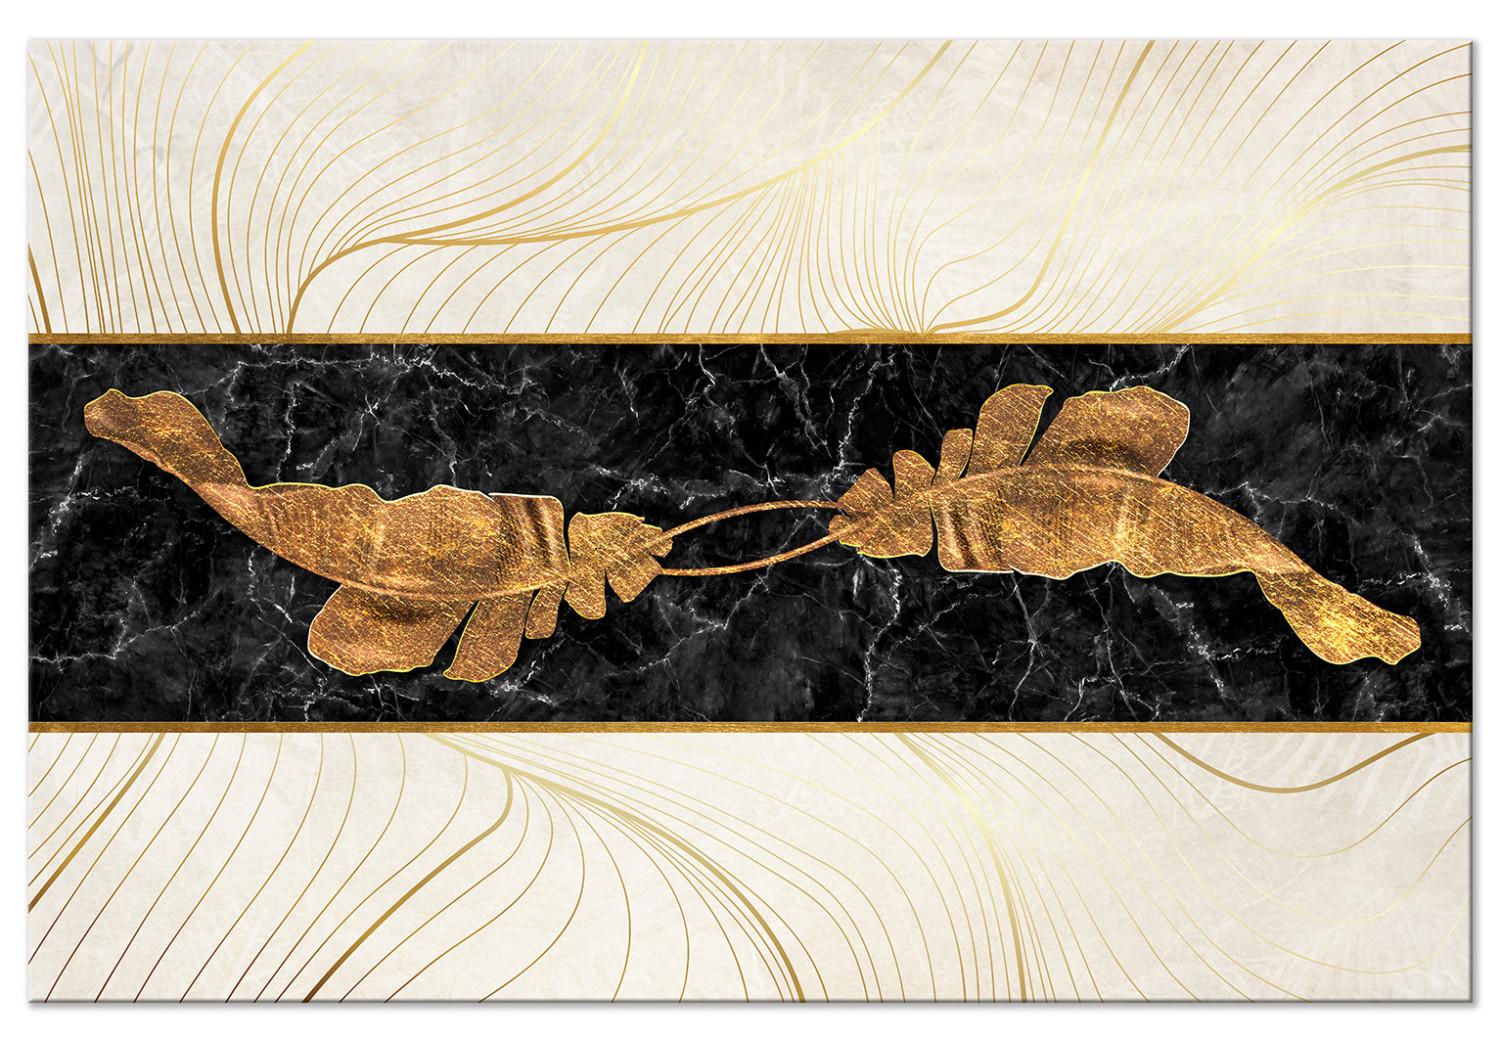 Cuadro Pan de oro sobre mármol negro - abstracto en estilo art decó